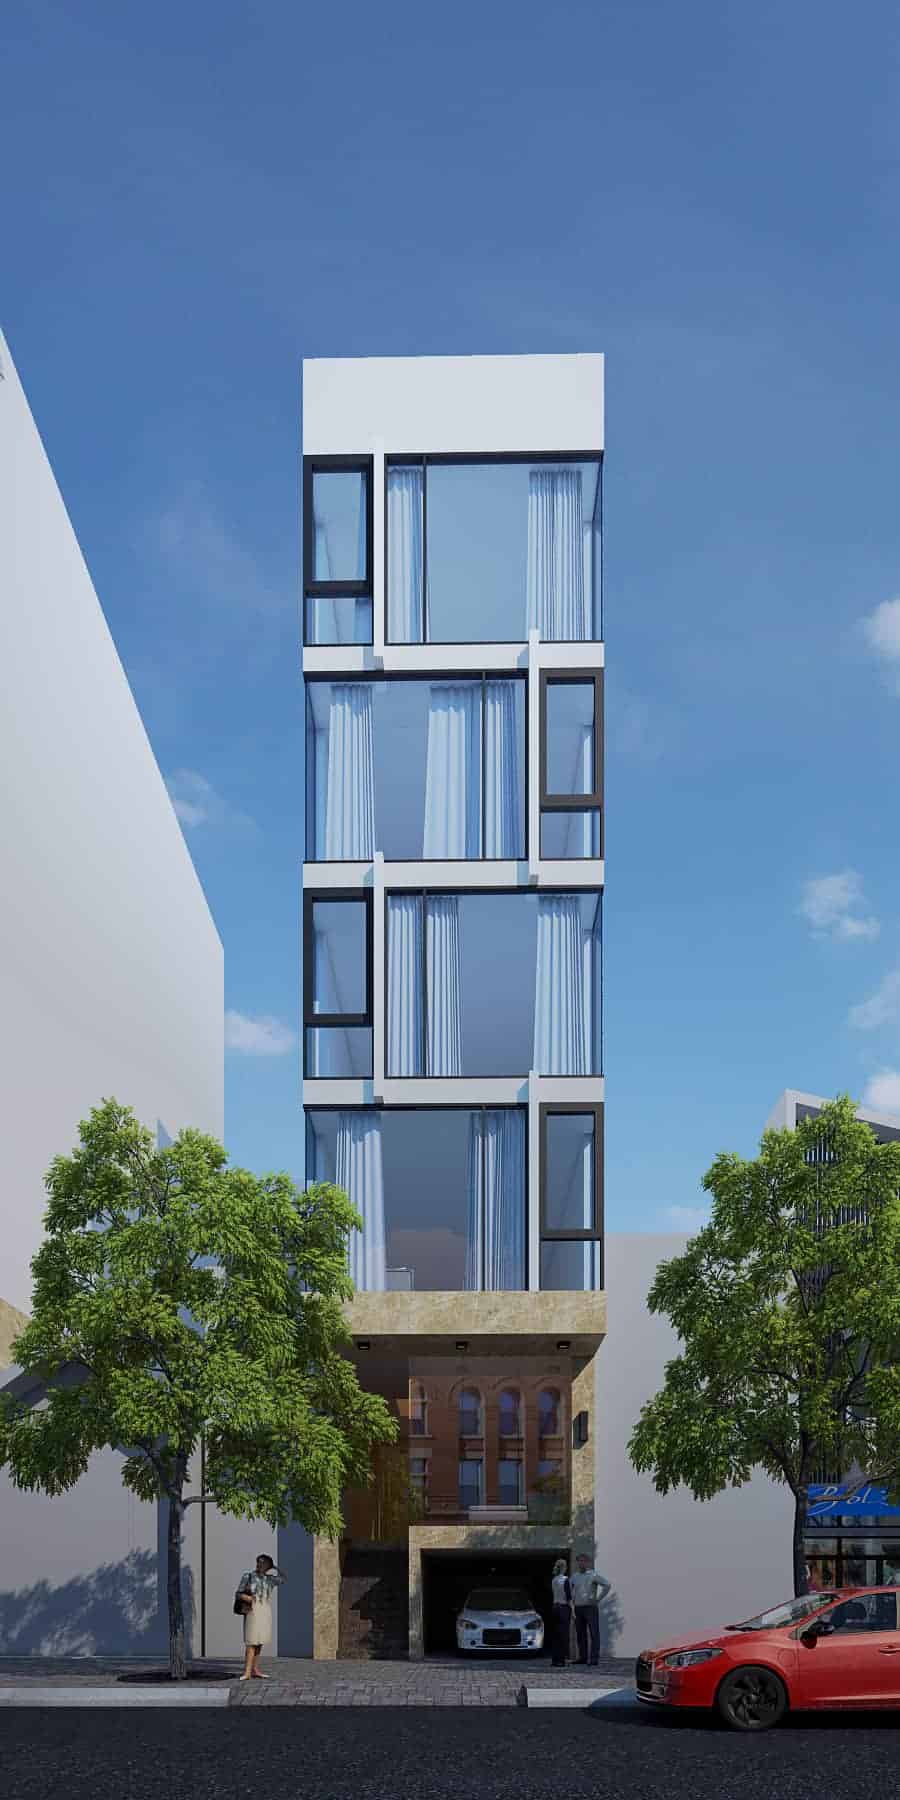 apartment building design ideas